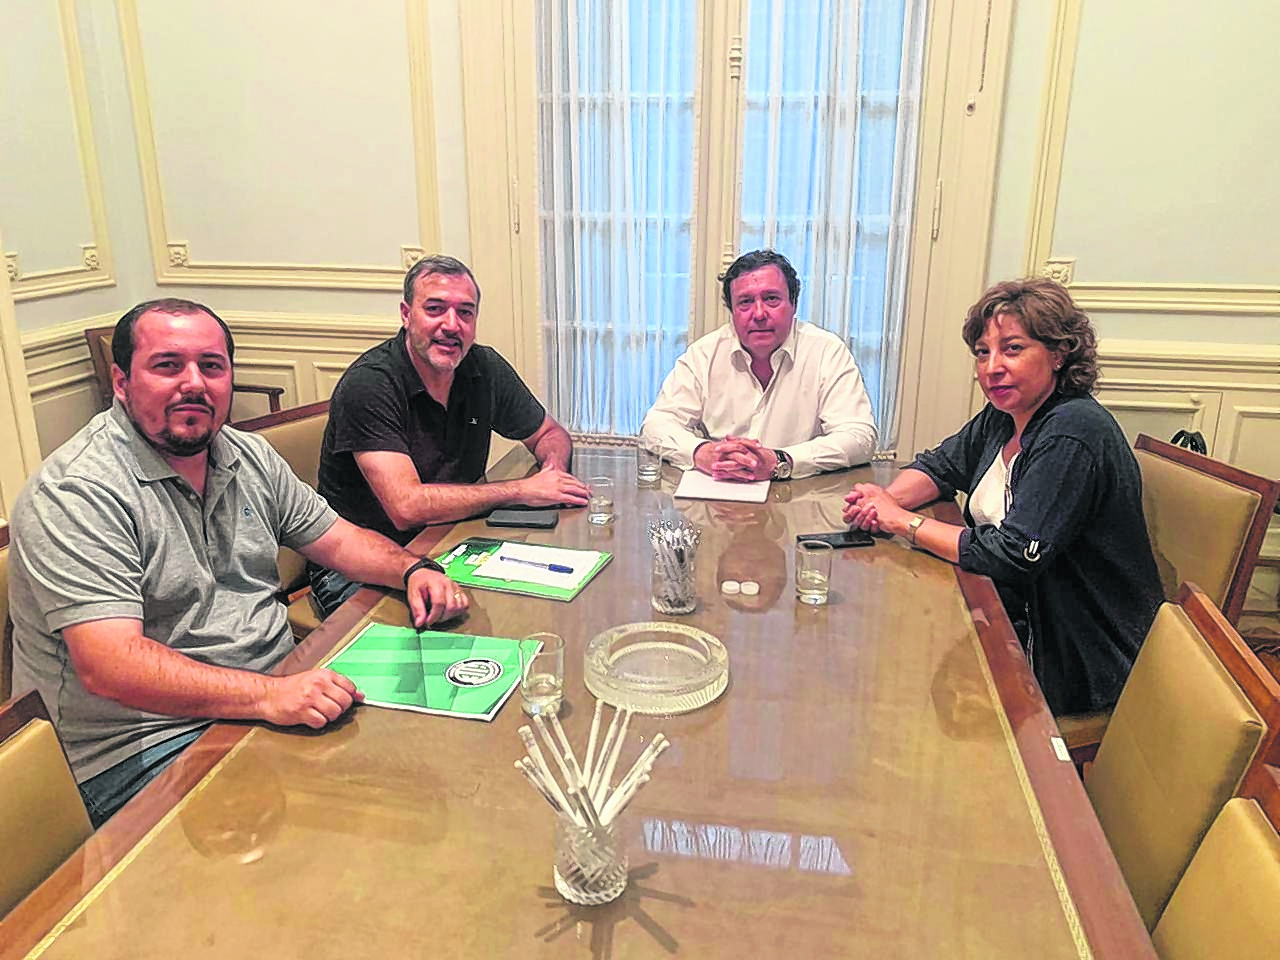 El encuentro del miércoles en Buenos Aires sirvió para distender una relación que empezó con fricciones. Foto: Gentileza